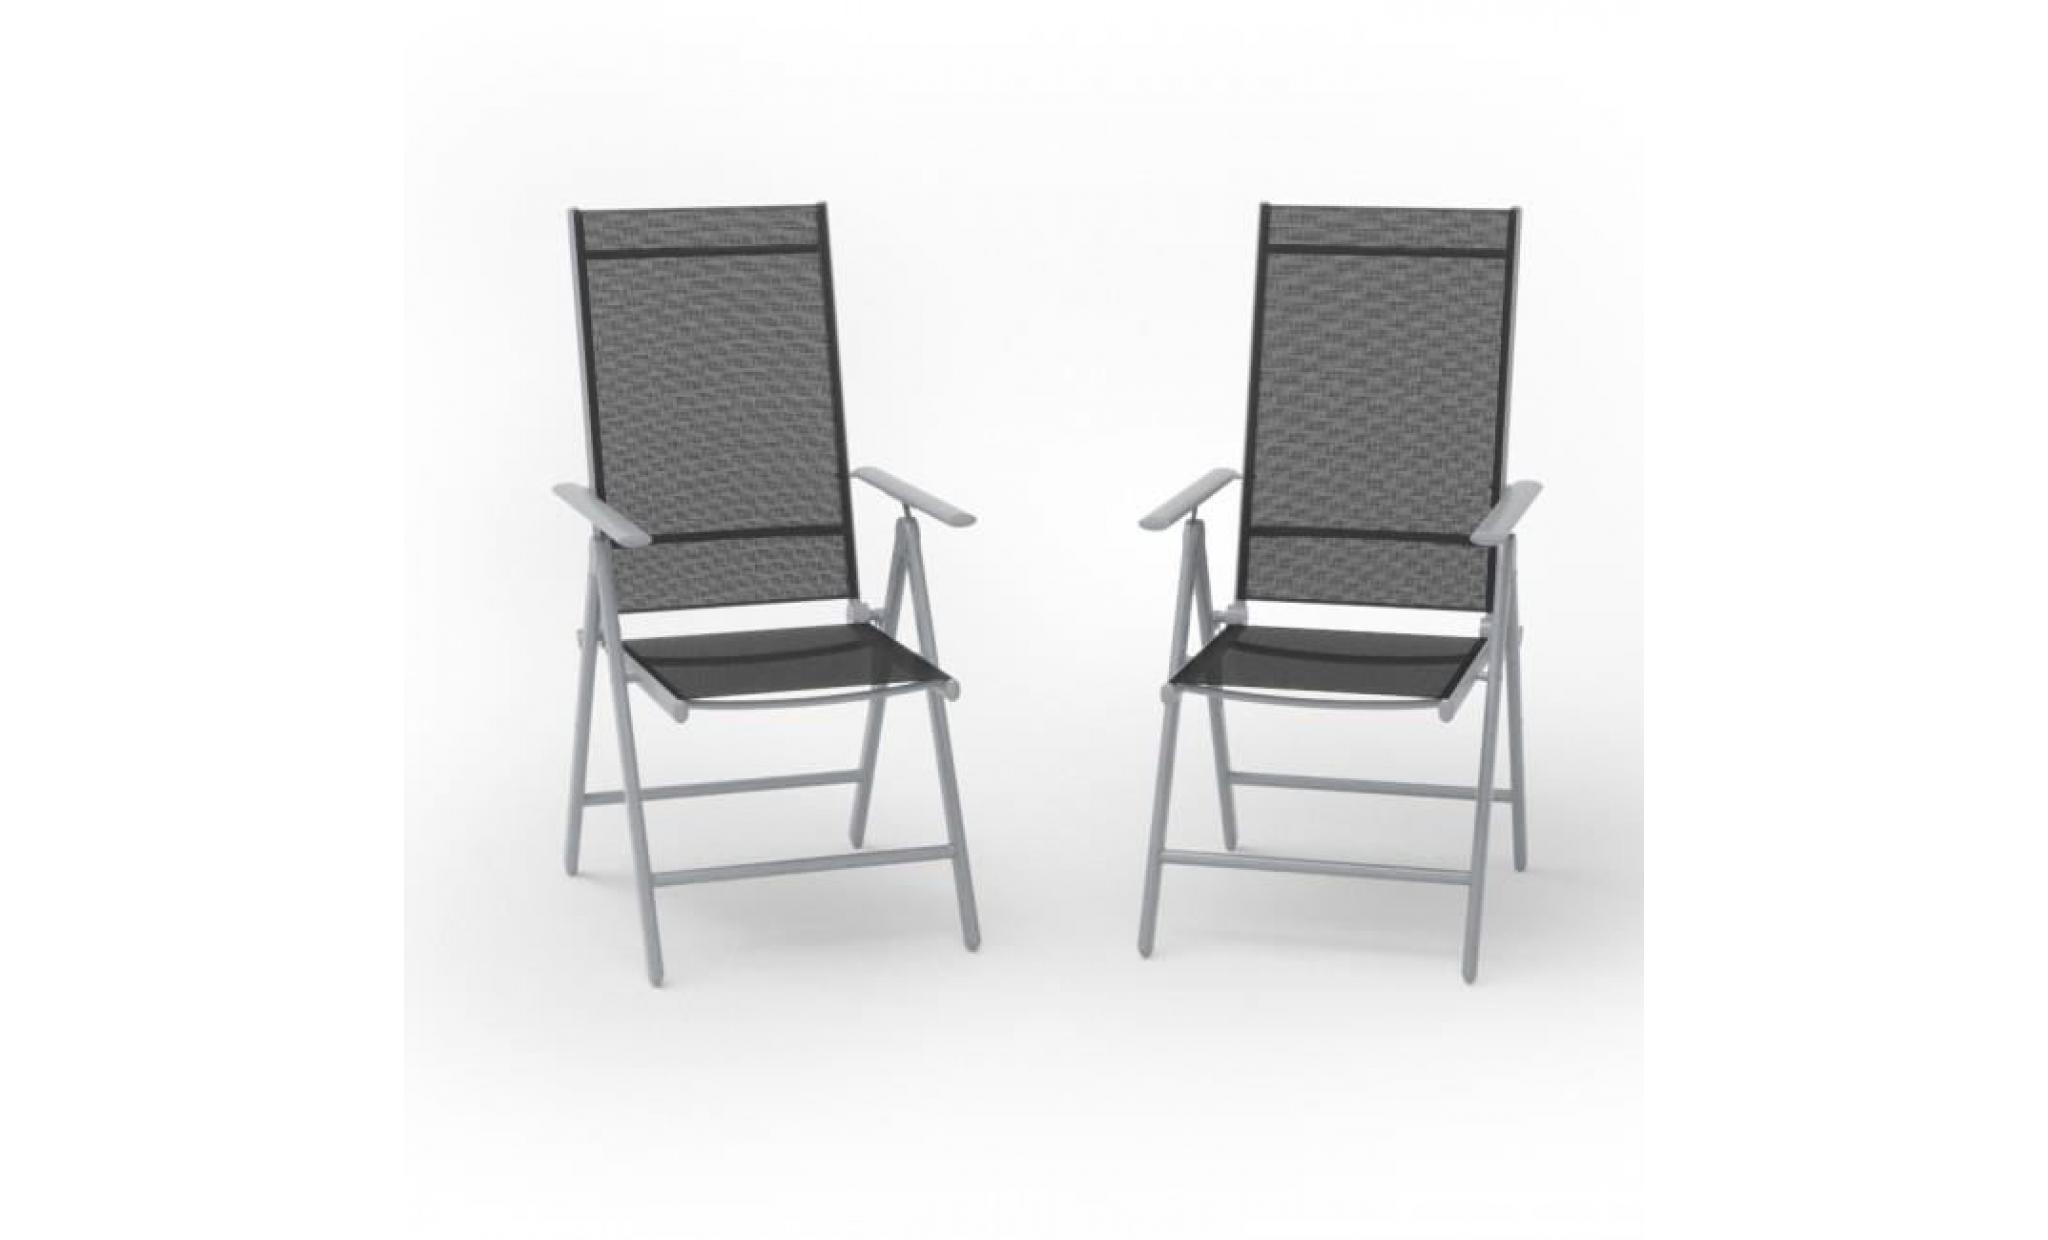 lot de 2 chaise de jardin en aluminium chaise pliante chaise longue camping